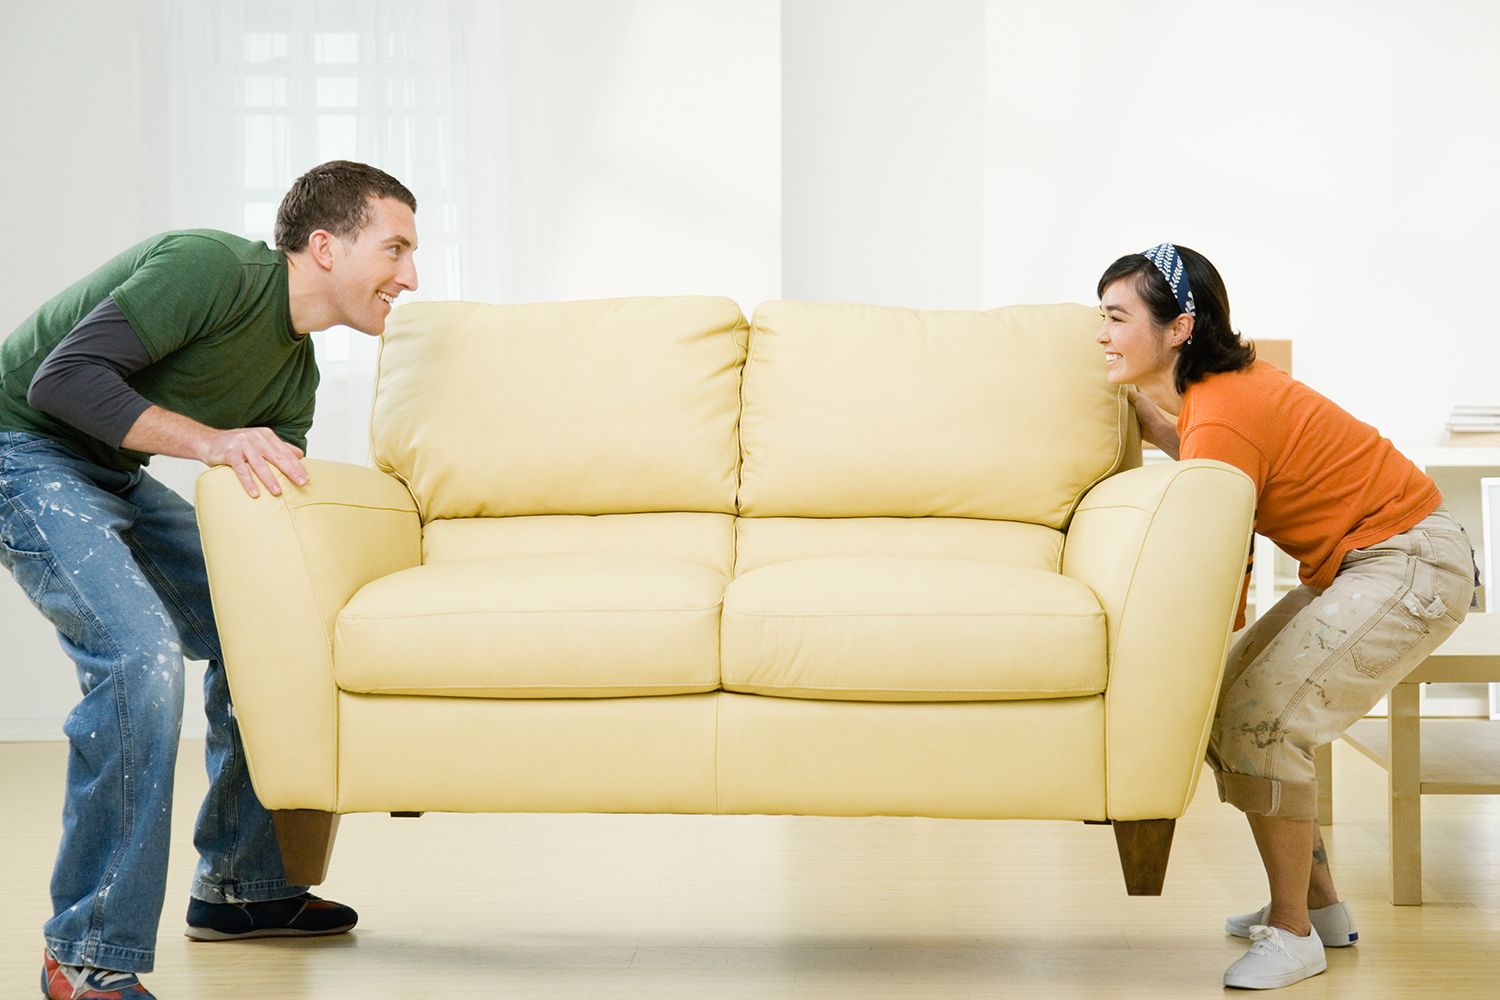 Hãy bỏ thói quen kéo lê nội thất trên sàn gỗ, từ ghế sofa, bàn nước, ghế bành cho đến ghế đẩu,...